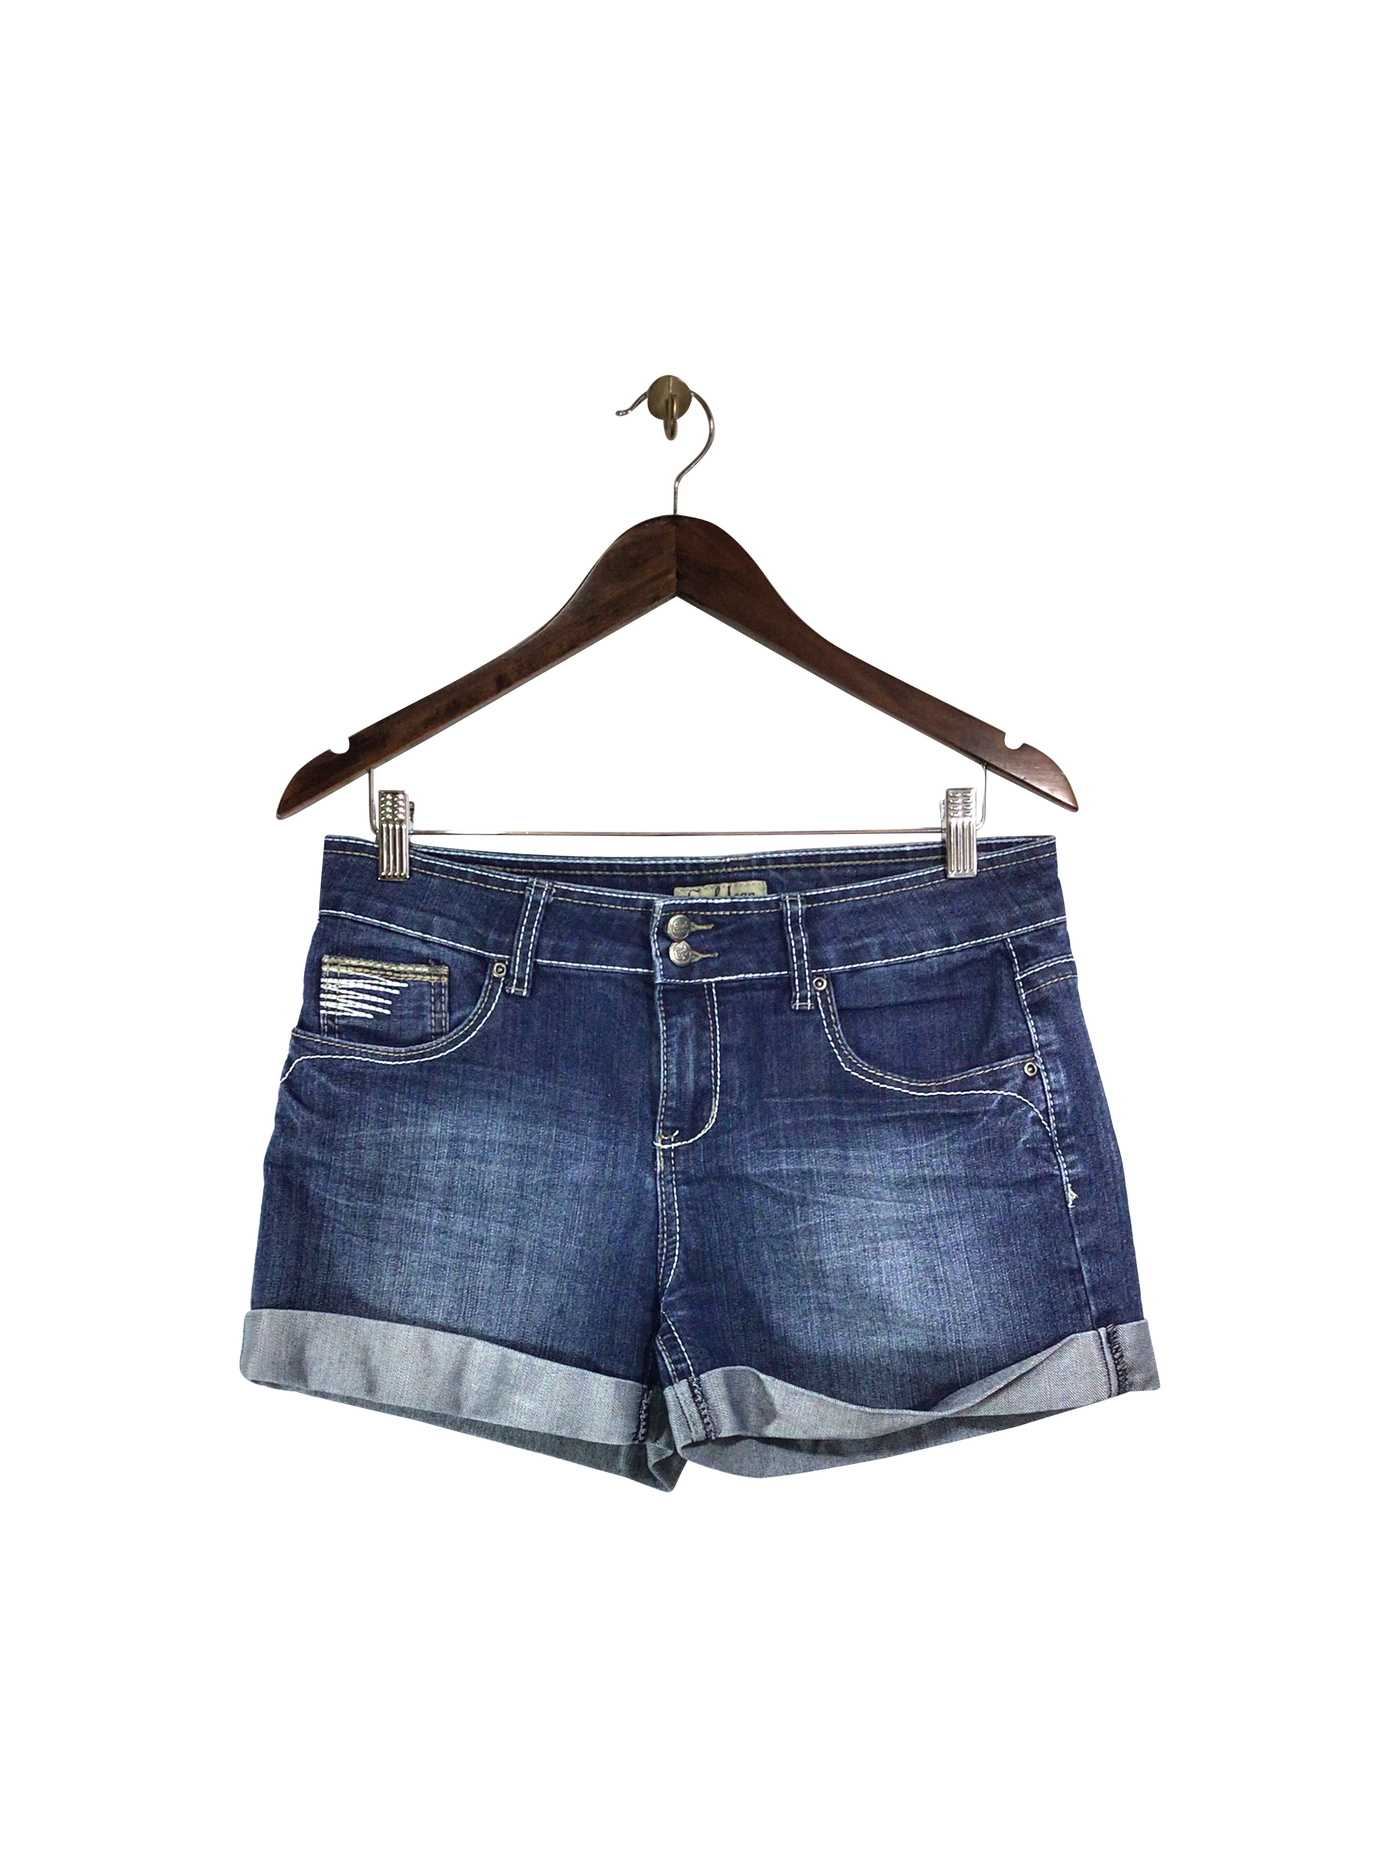 EARL JEAN Jeans Shorts Regular fit in Blue - Size 10 | 7.69 $ KOOP